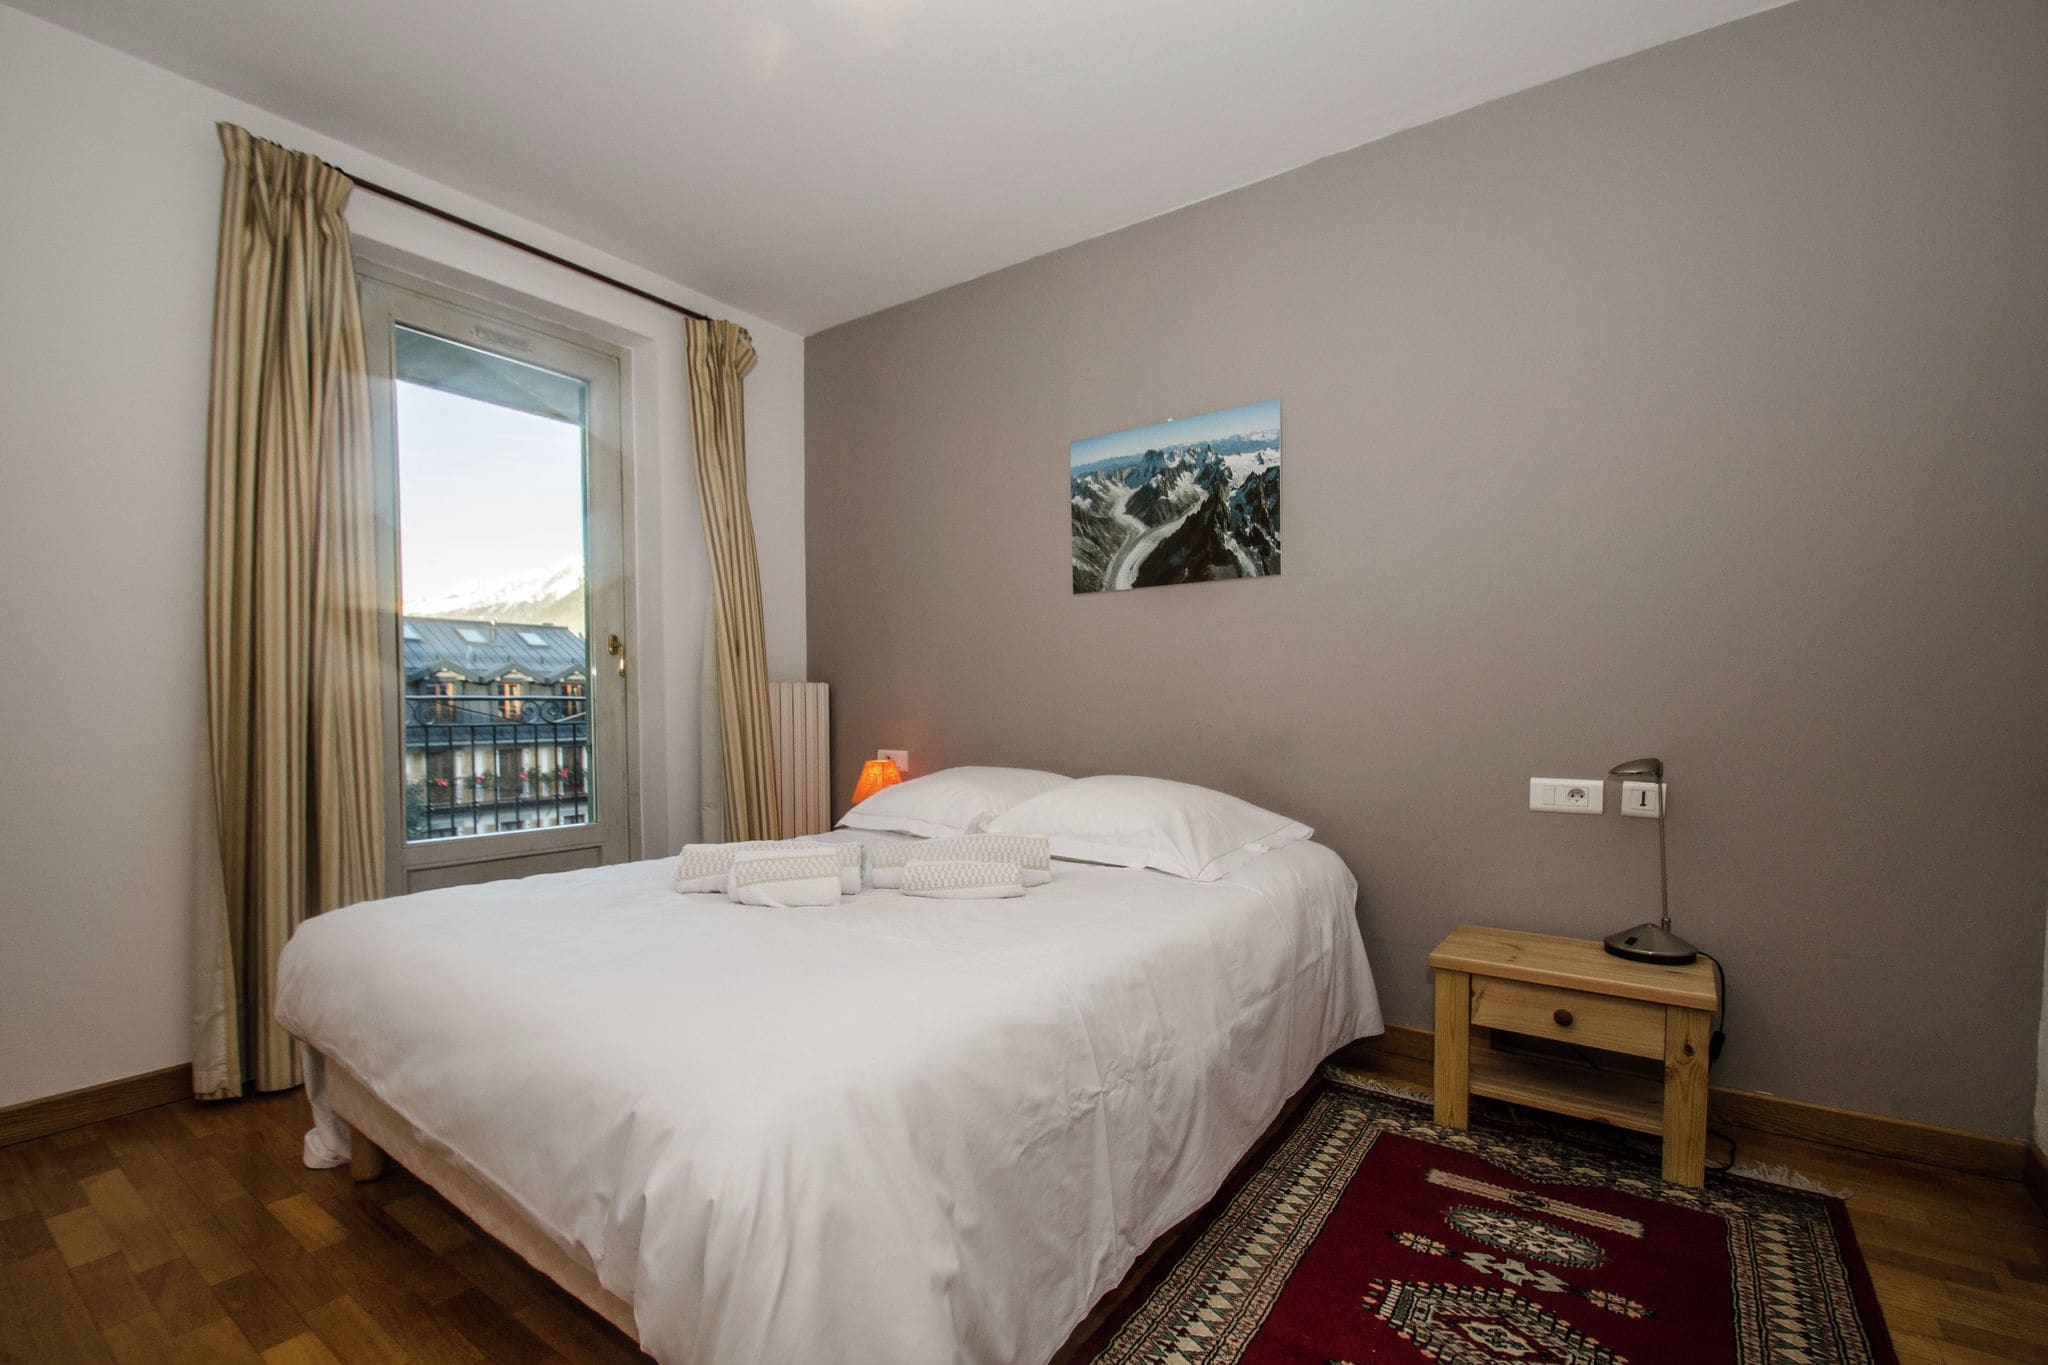 Gezellig appartement van 80 m2, gelegen in het centrum van Chamonix.